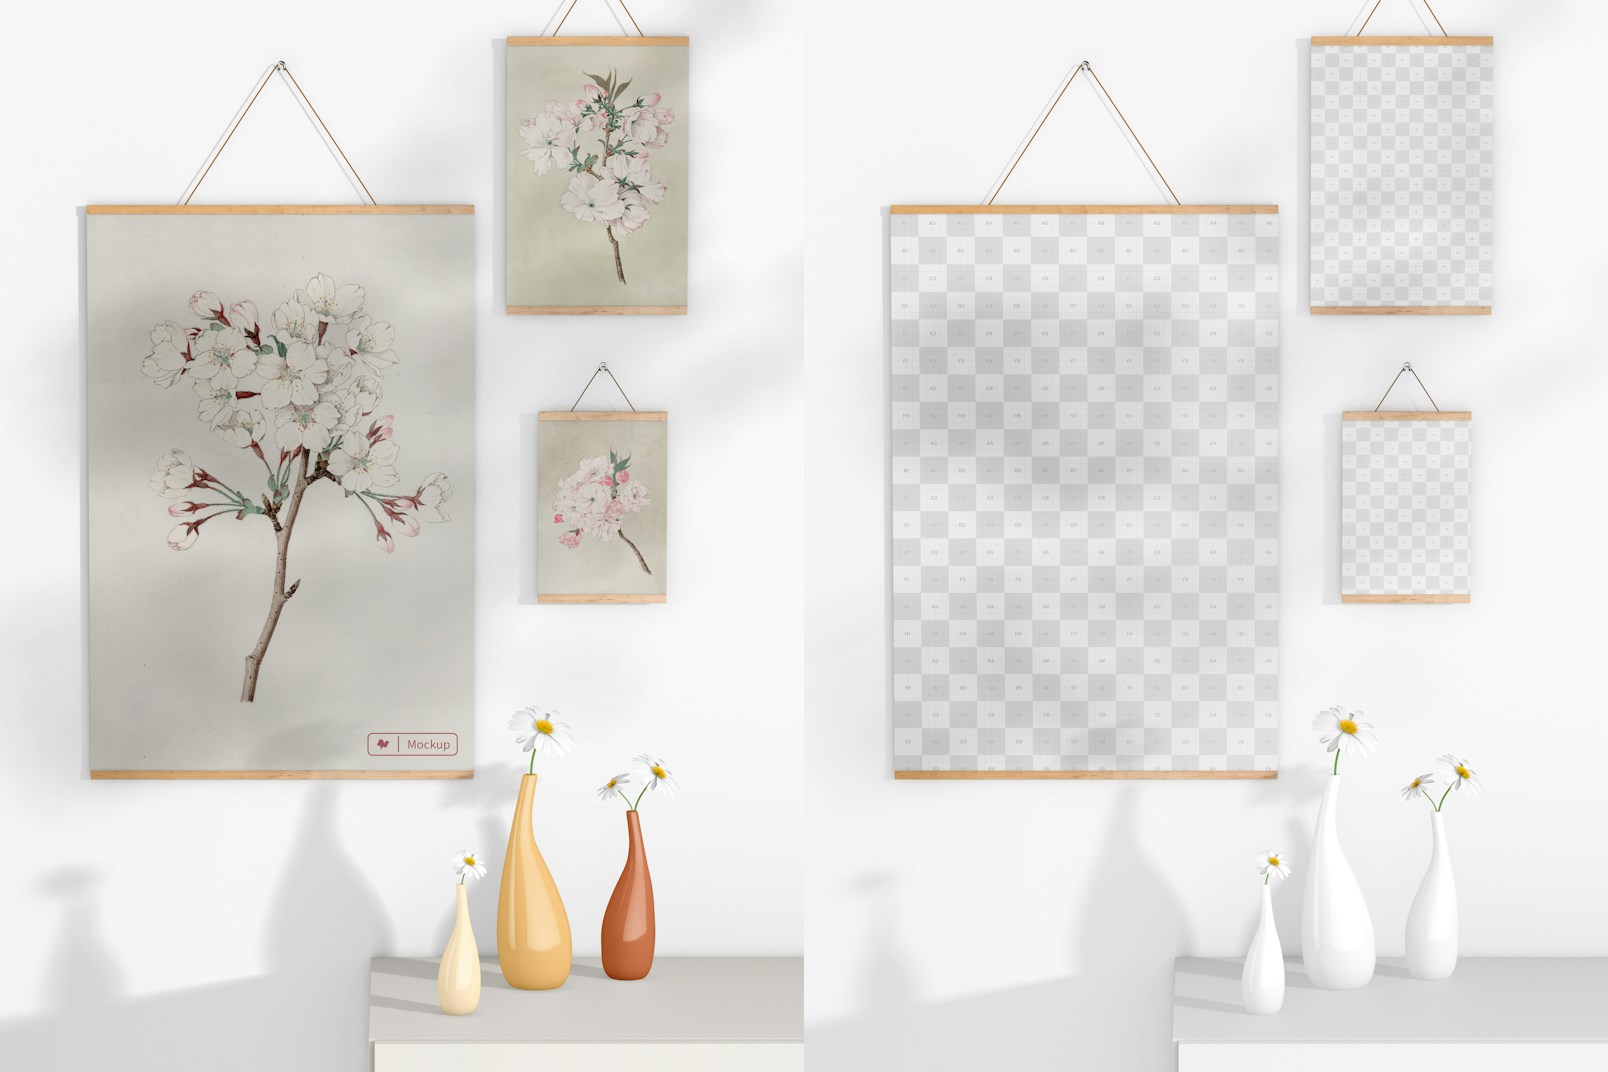 2:3 Wooden Frame Poster Hanger Set Mockup, with Vase